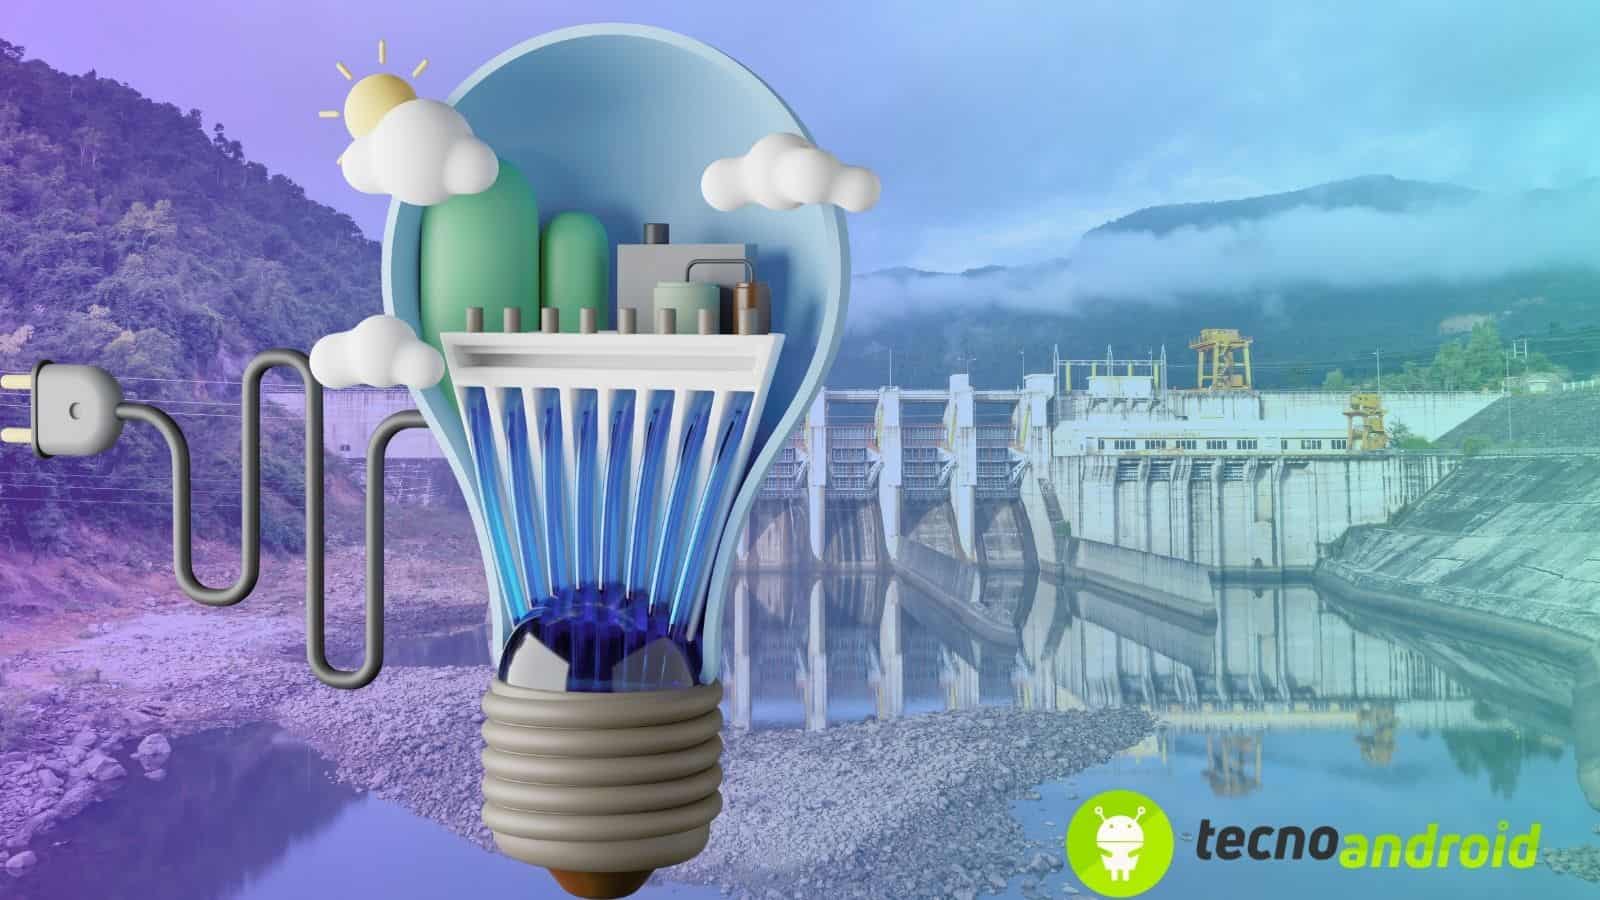 Energia: esperimenti idroelettrico senza acqua per la decarbonizzazione 